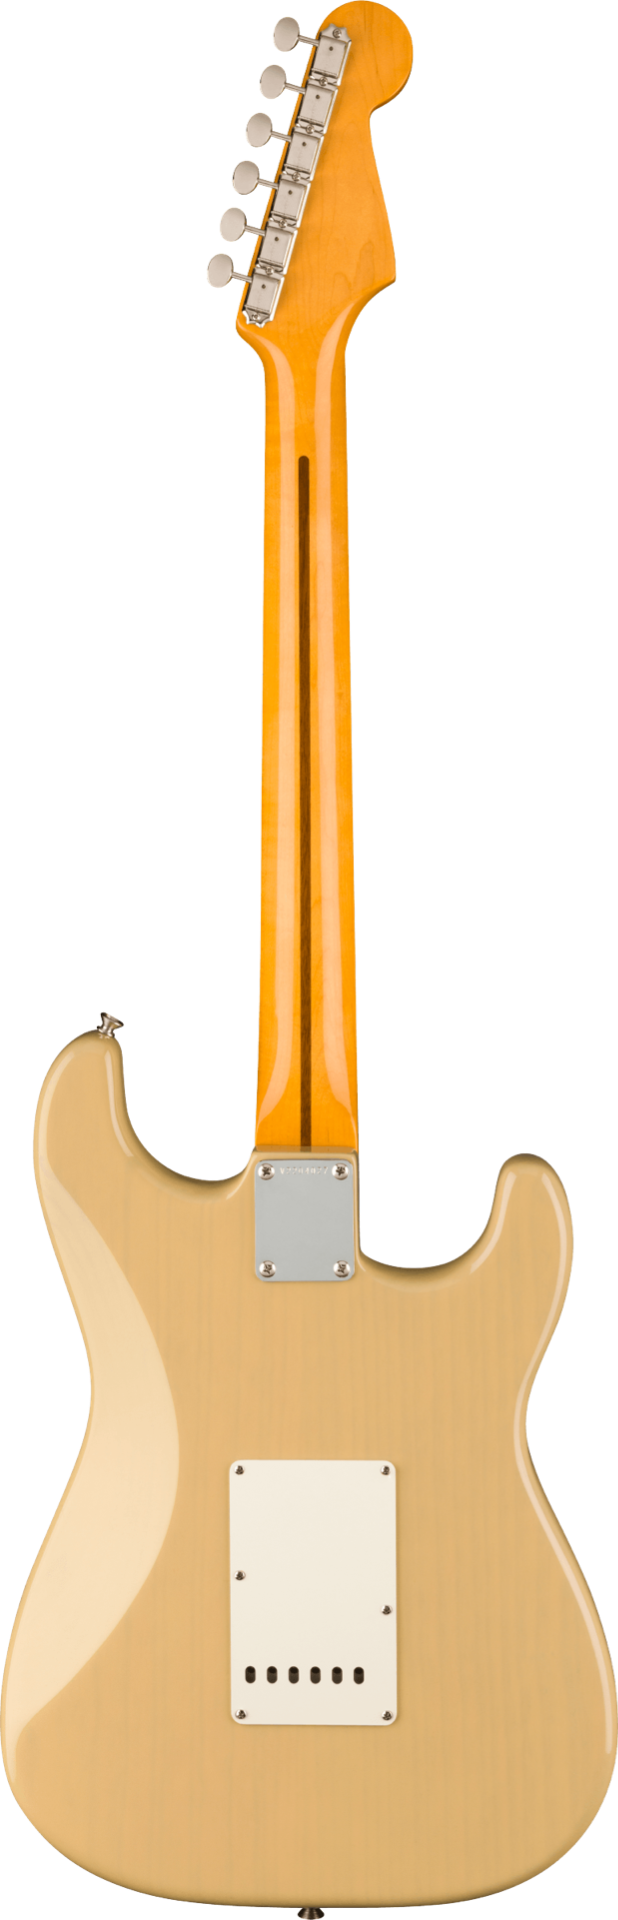 Fender American Vintage II 1957 Stratocaster Left-Hand, Vintage Blonde